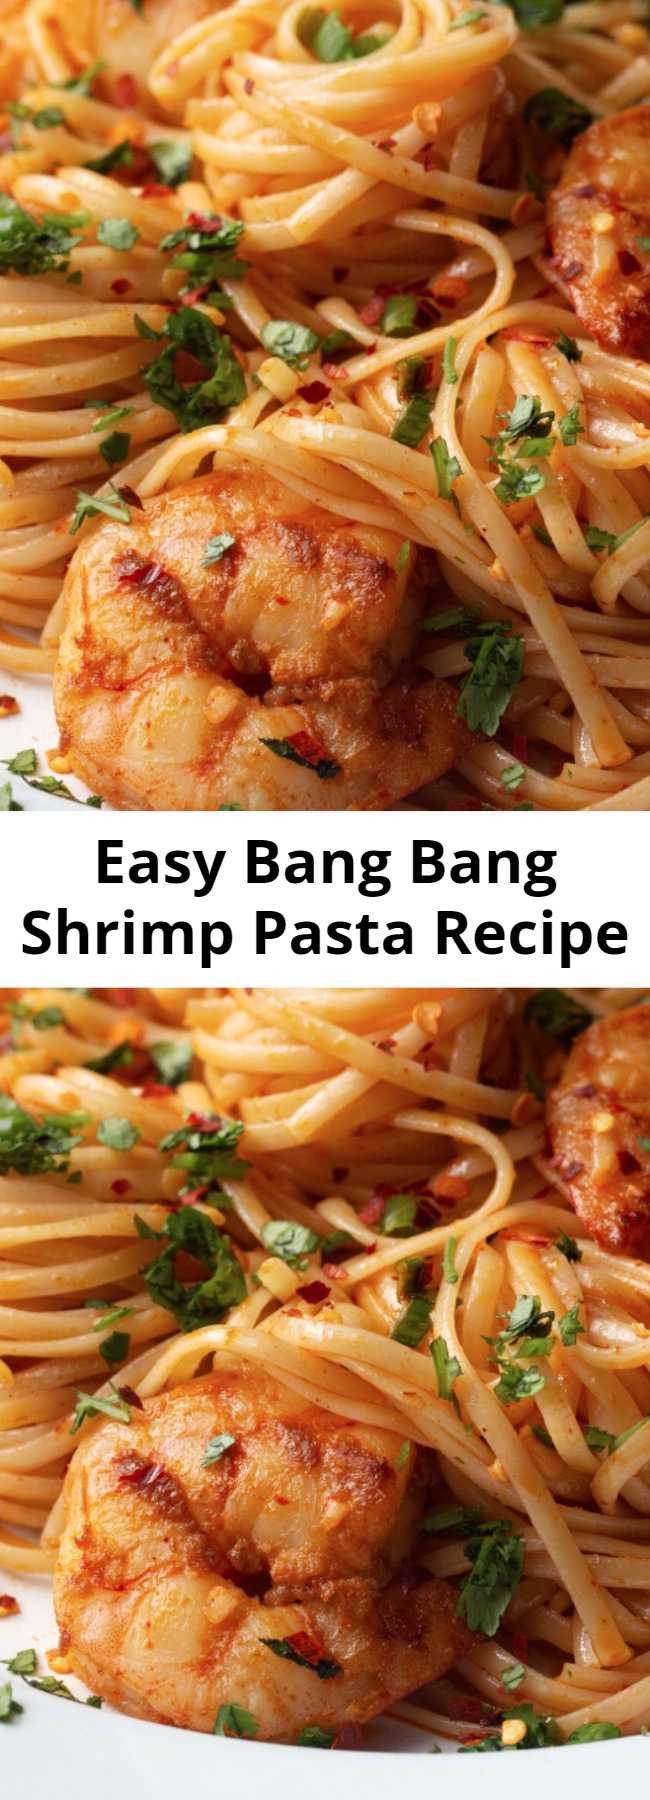 Easy Bang Bang Shrimp Pasta Recipe - Why "Bang Bang?" Because this shrimp pasta is bangin'!